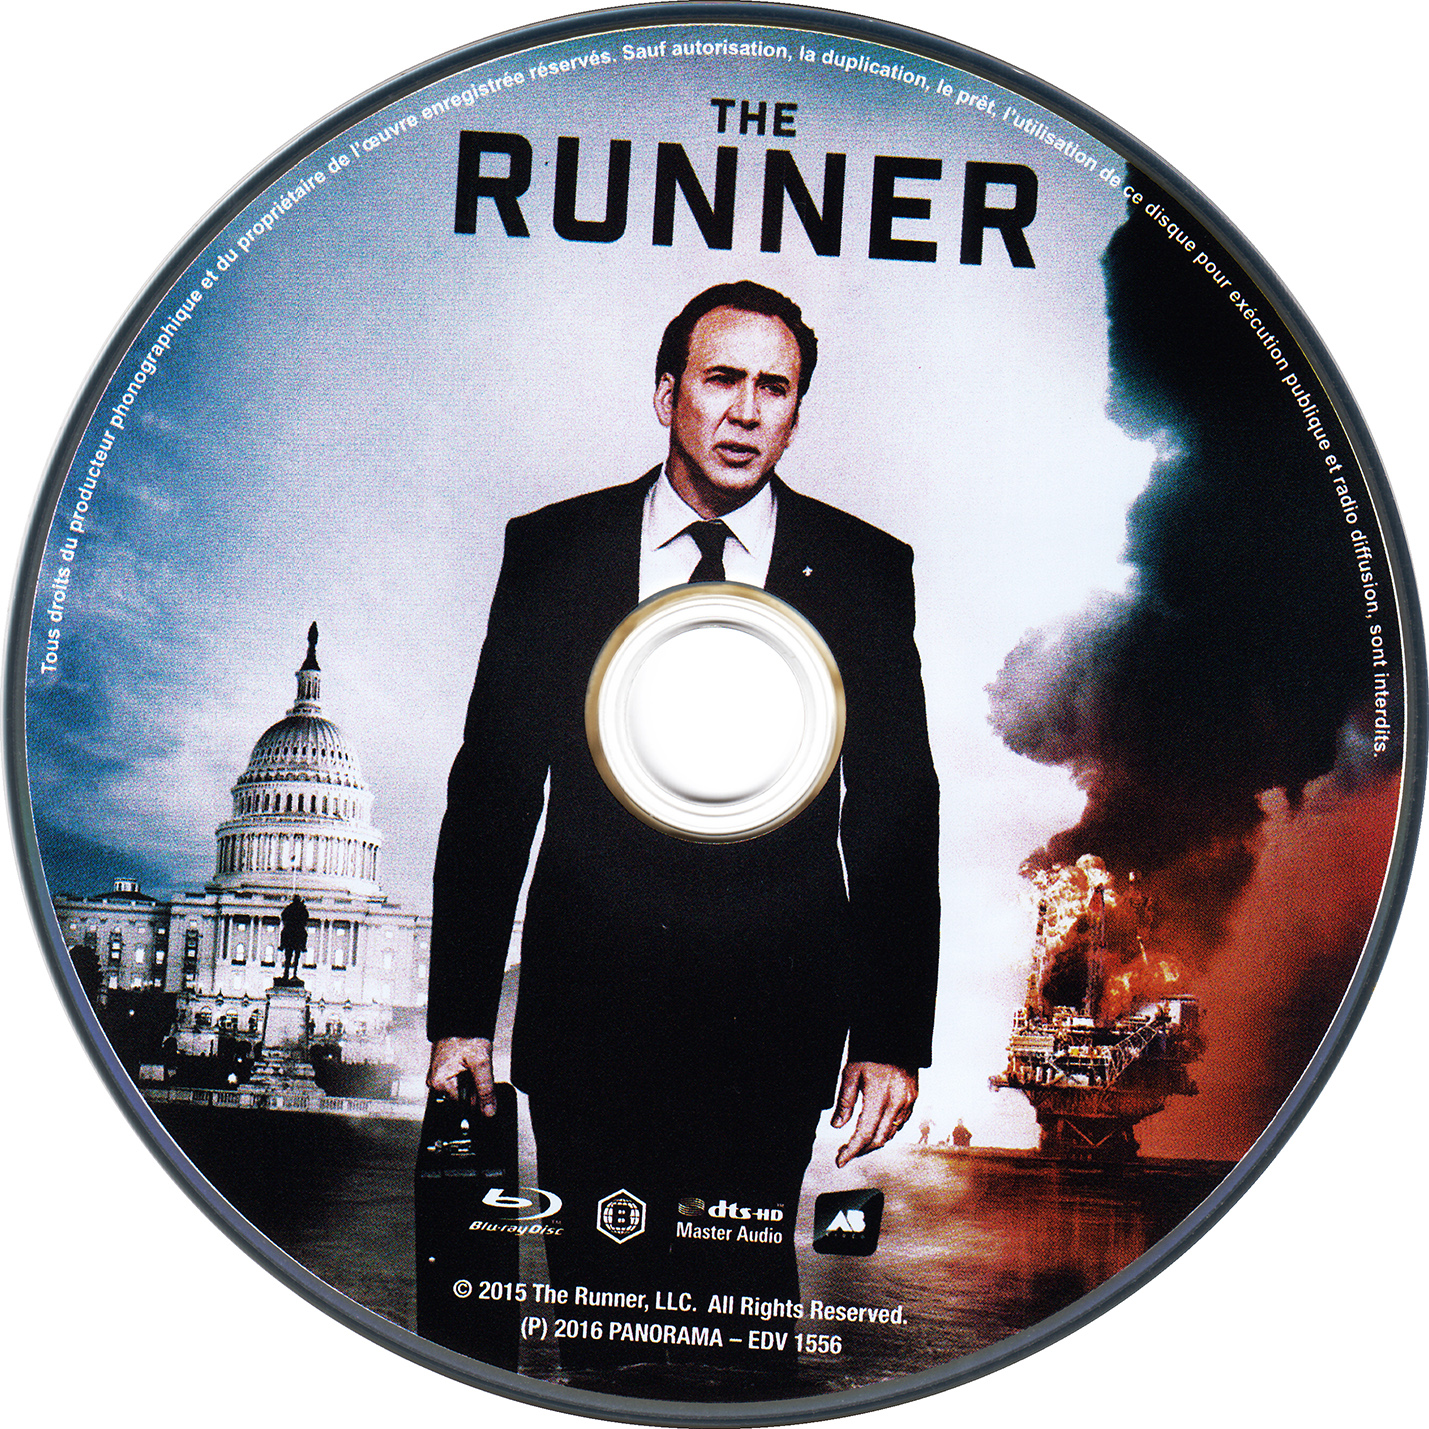 The runner (BLU-RAY)